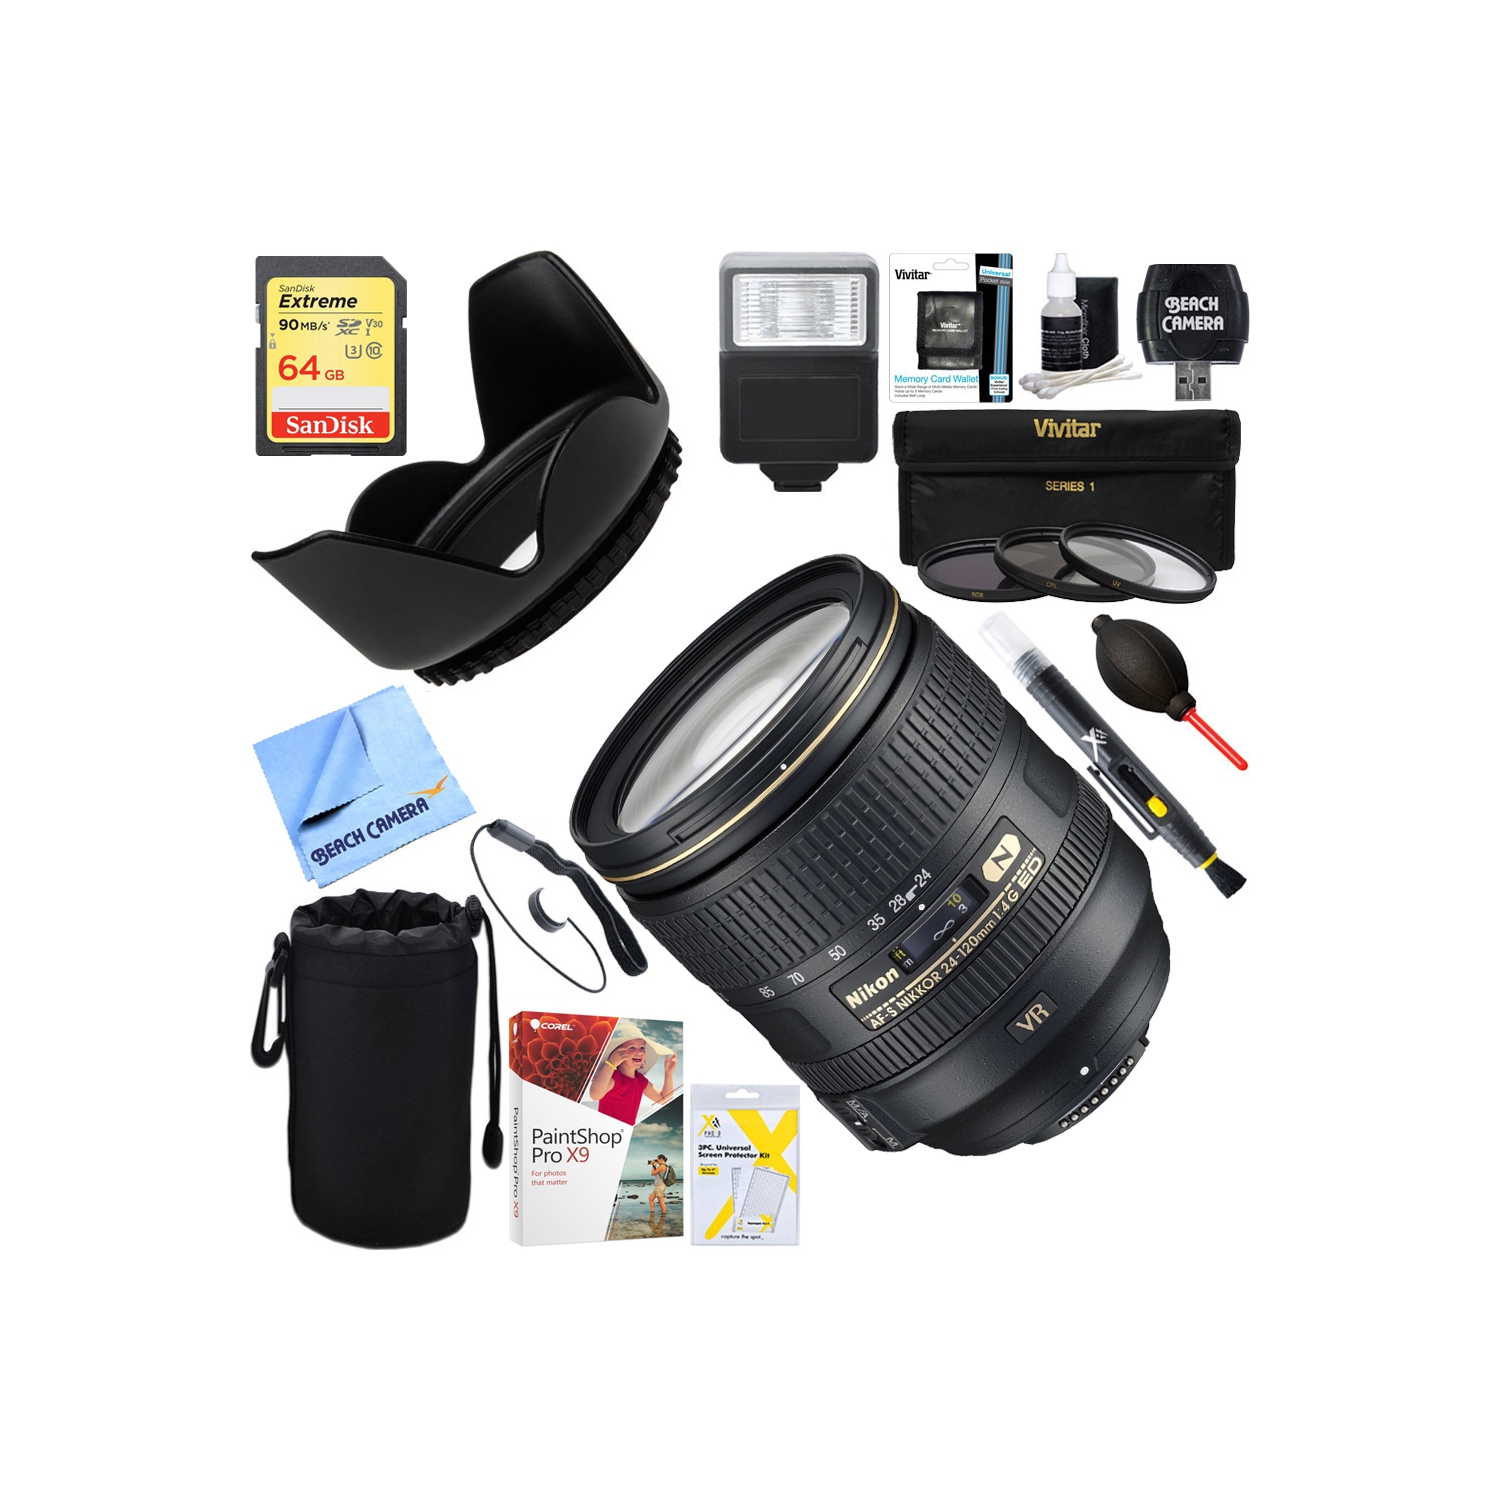 Nikon AF-S NIKKOR 24-120mm f/4G ED VR Lens for Nikon FX-format D-SLRs with 64GB Ultimate Filter & Flash Photography Bundle - US Version w/ Seller Warranty